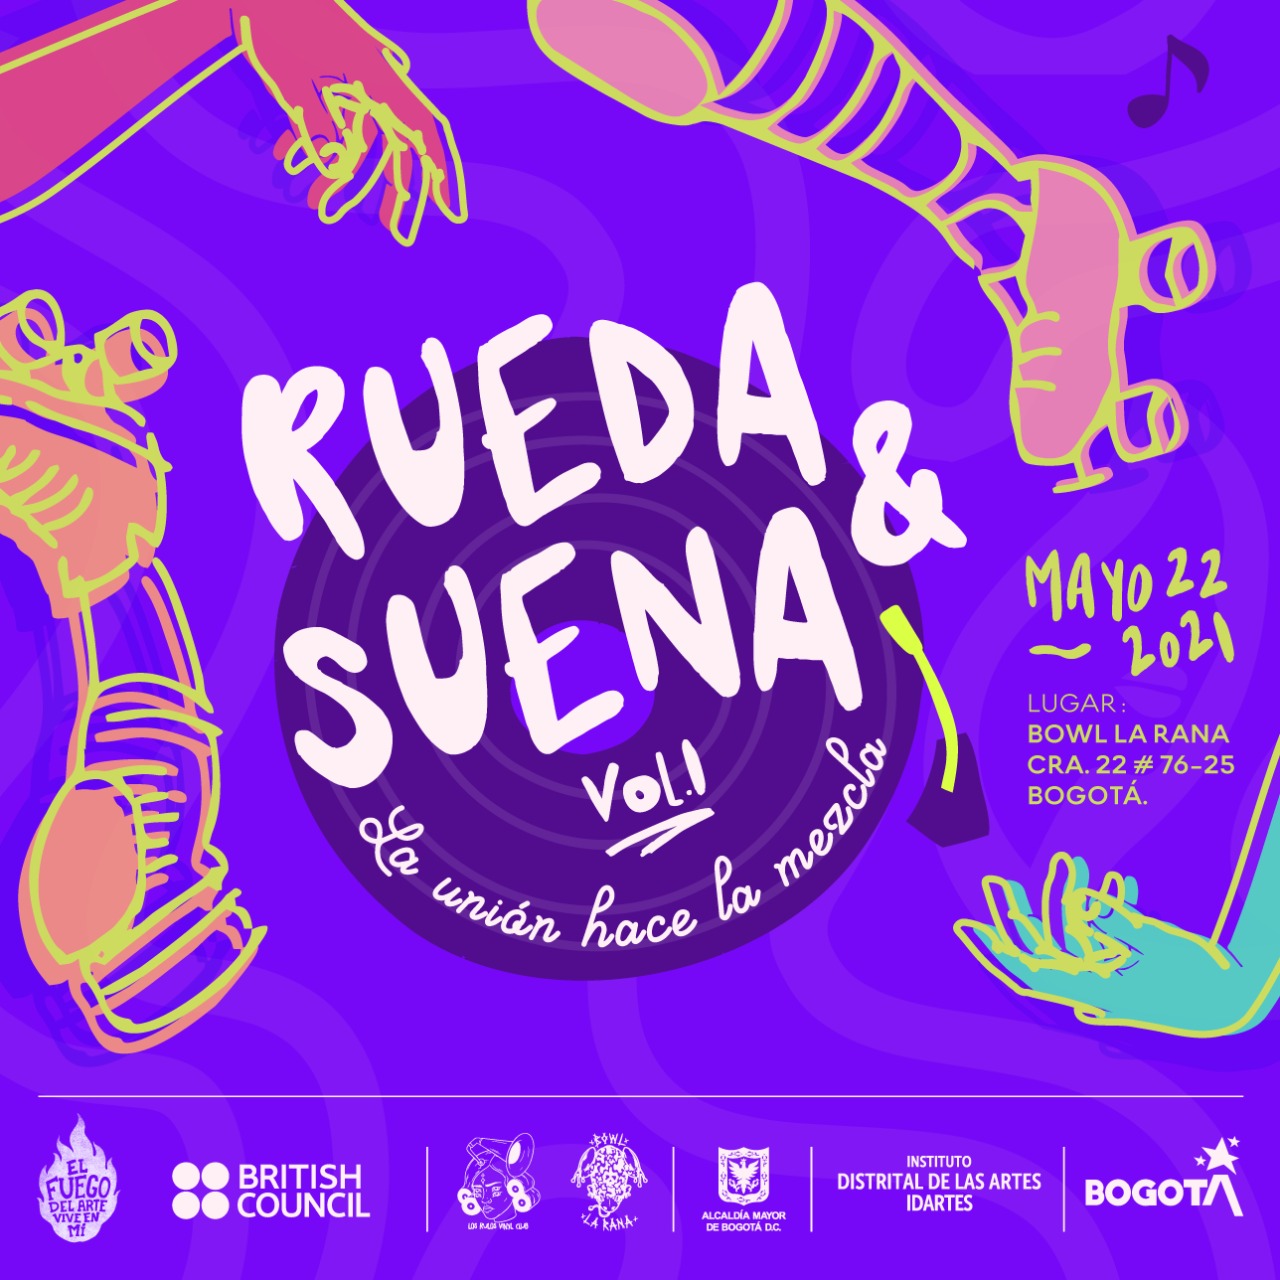 Rueda y Suena Vol.1